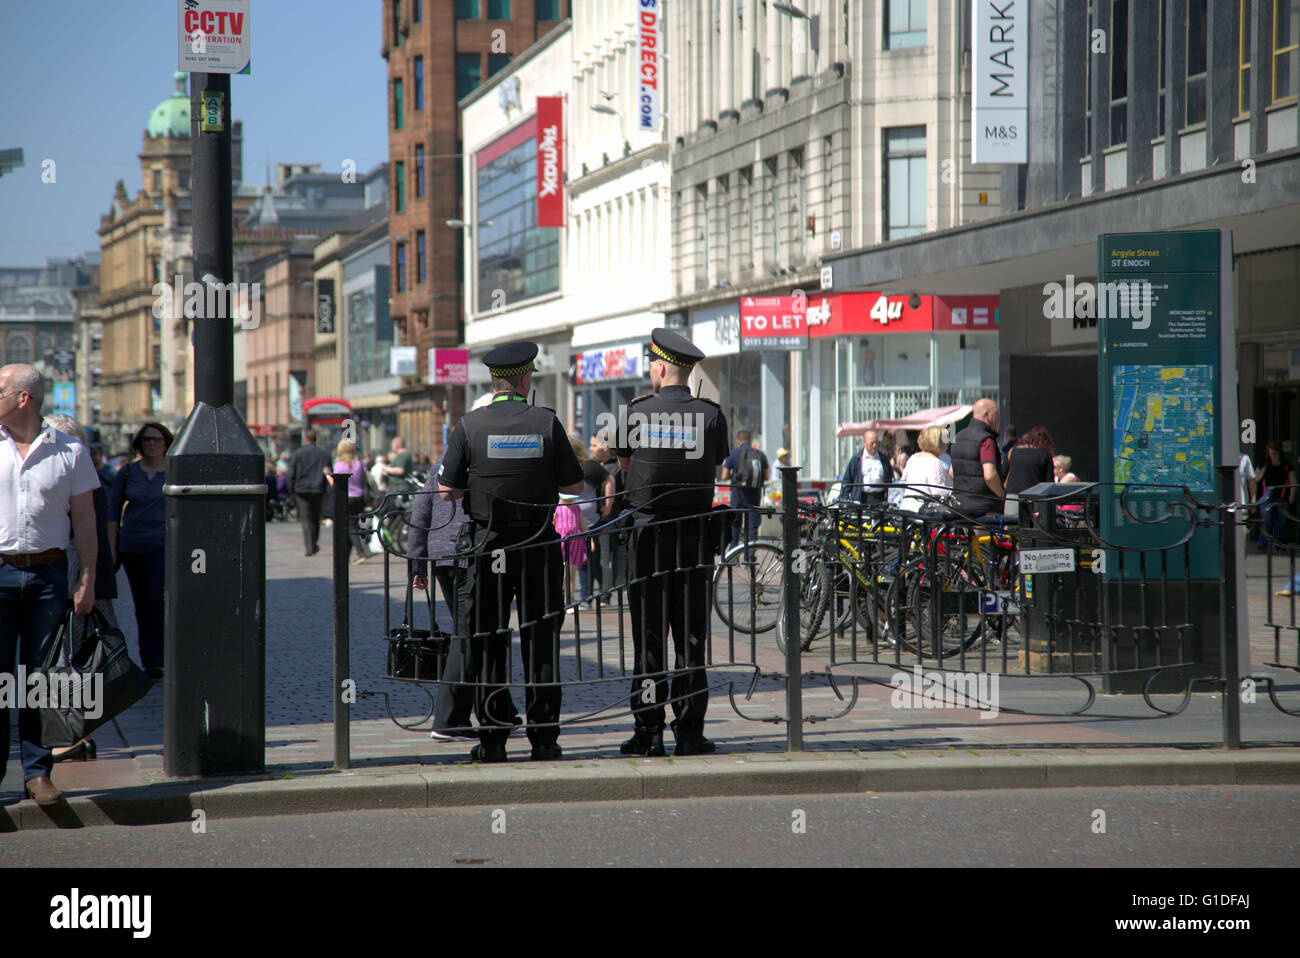 Les agents de la communauté d'arrêter de jeter des déchets sur la rue Argyle avec couverture cctv sign, Glasgow, Écosse, Royaume-Uni. Banque D'Images